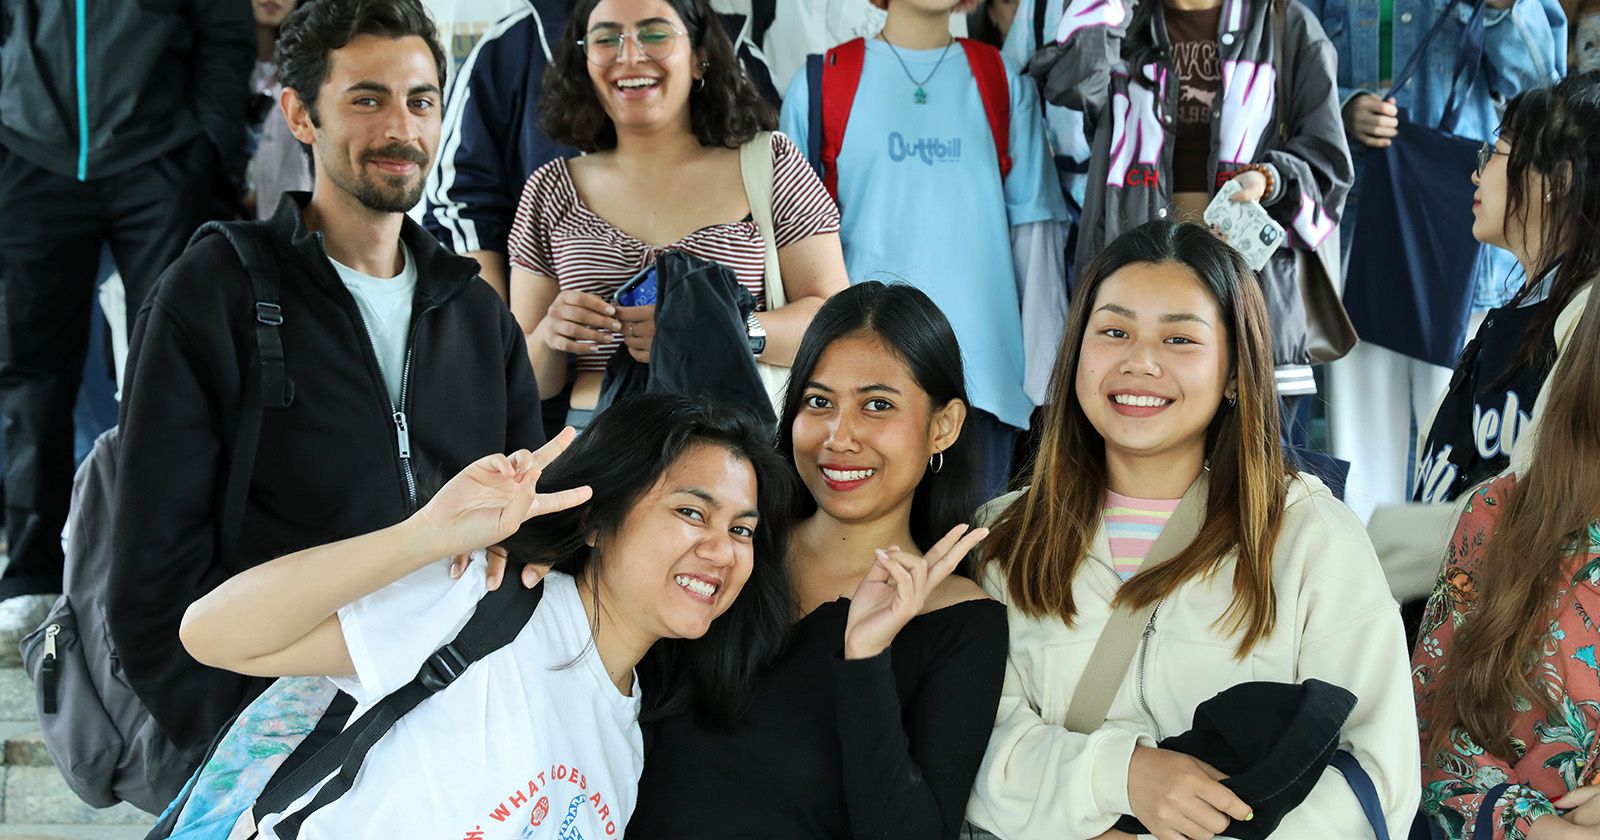  Grupa studentów i studentek zagranicznych pozujących do zdjęcia